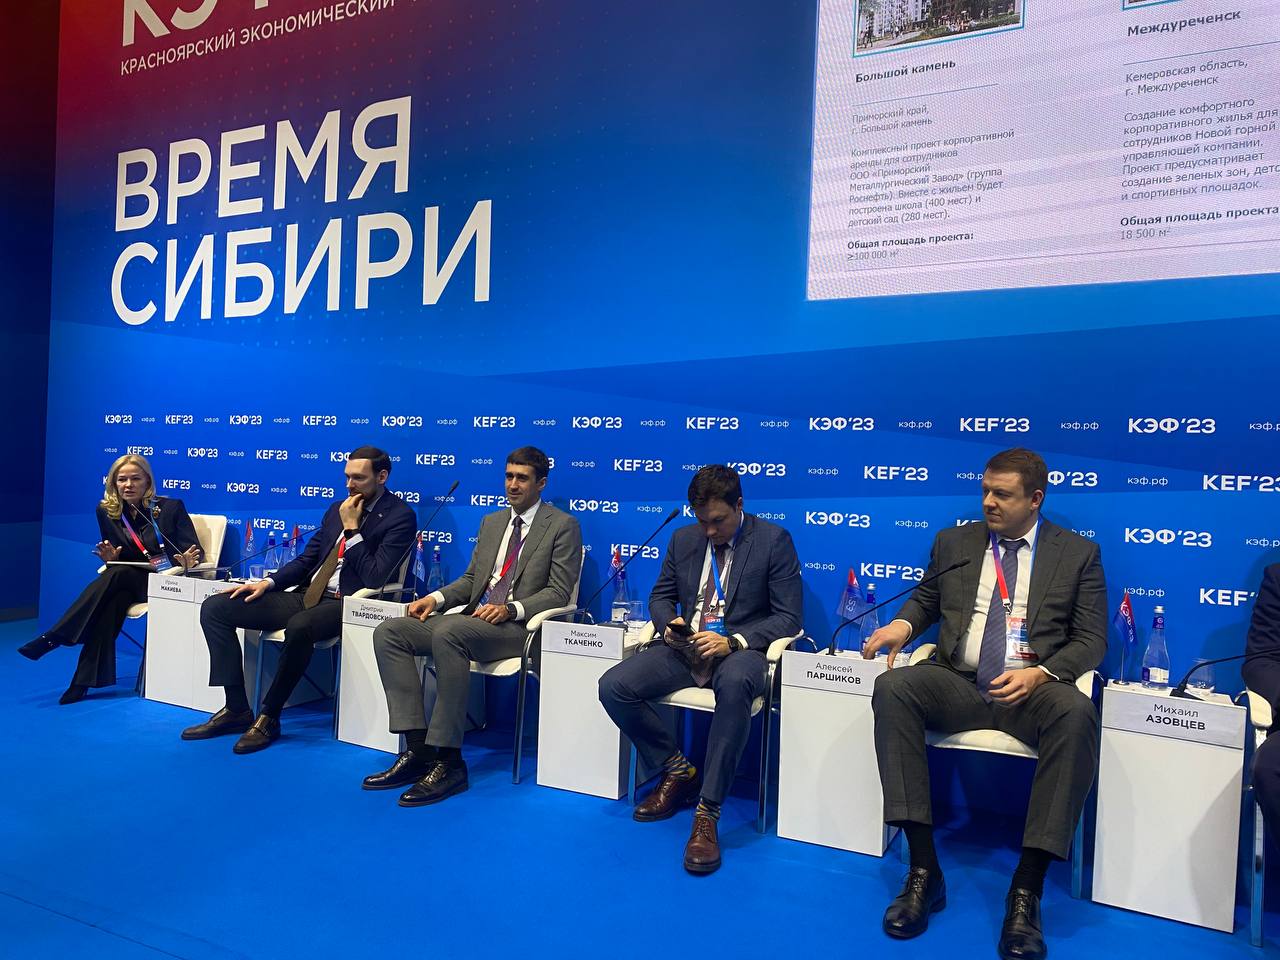 Дмитрий Твардовский: о мерах поддержки для развития Сибири и приоритетах в развитии инвестпроектов